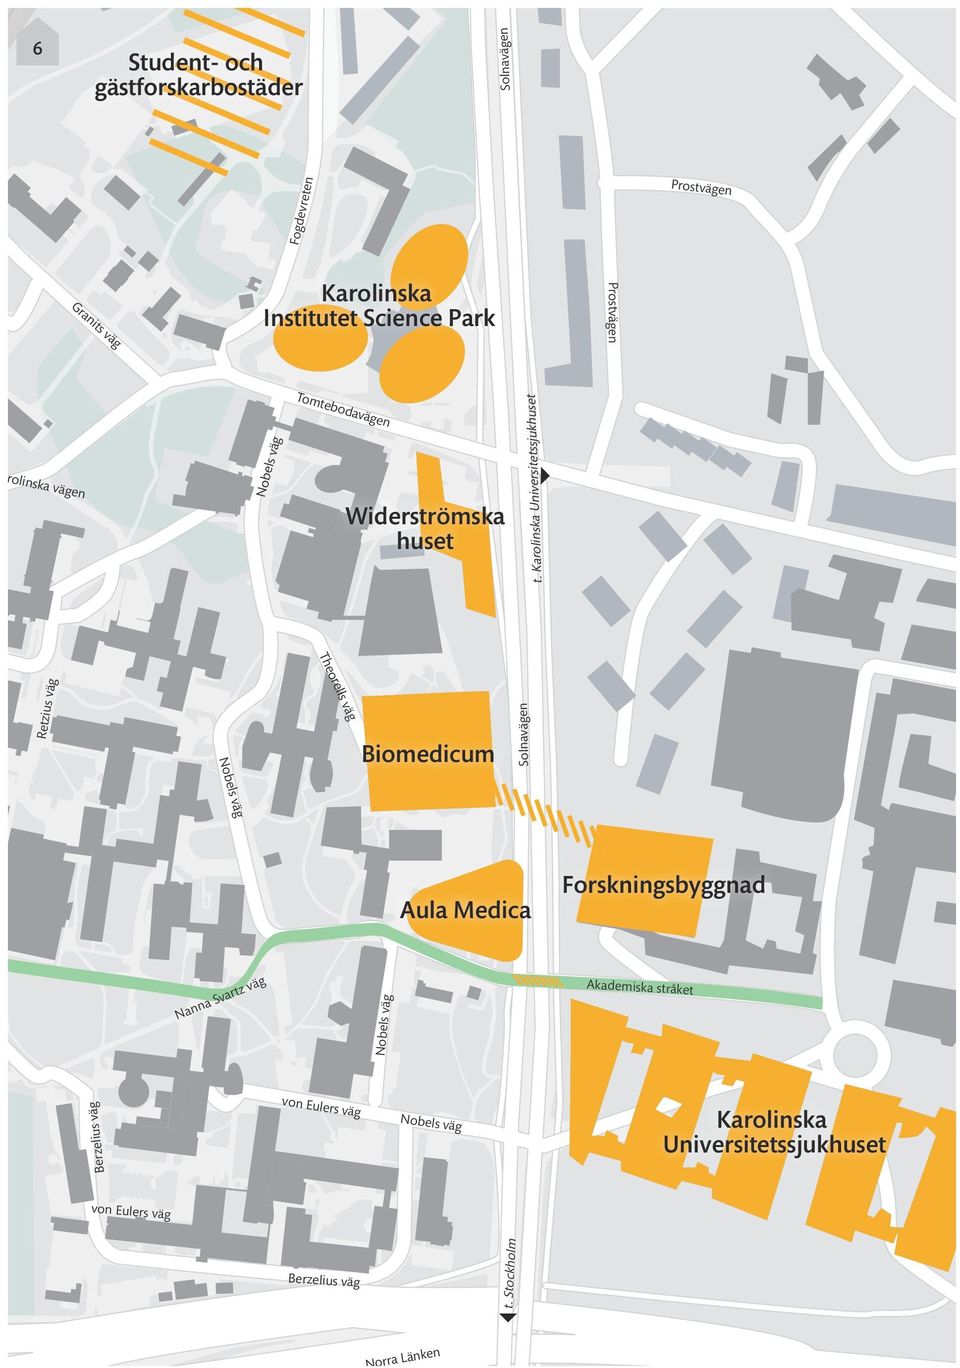 Karolinska Universitetssjukhuset äg 3 Theorells väg Retzius väg Biomedicum Solnavägen Nobels väg Aula Medica